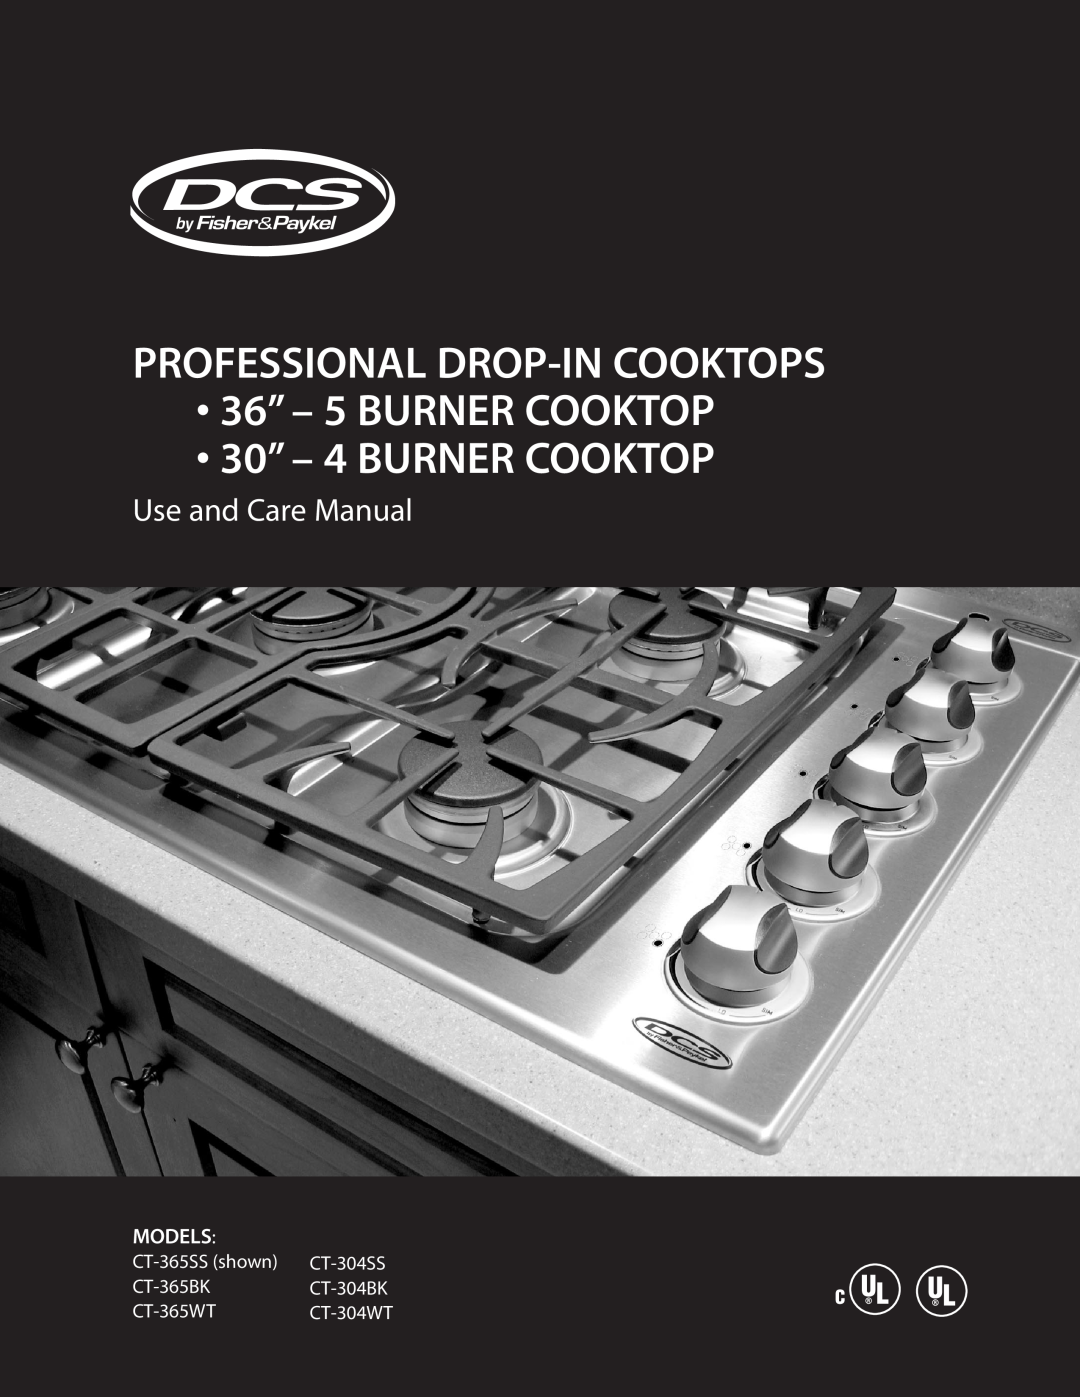 DCS CT-304SS manual Professional Drop-Incooktops, 36” - 5 BURNER COOKTOP 30” - 4 BURNER COOKTOP, Use and Care Manual 